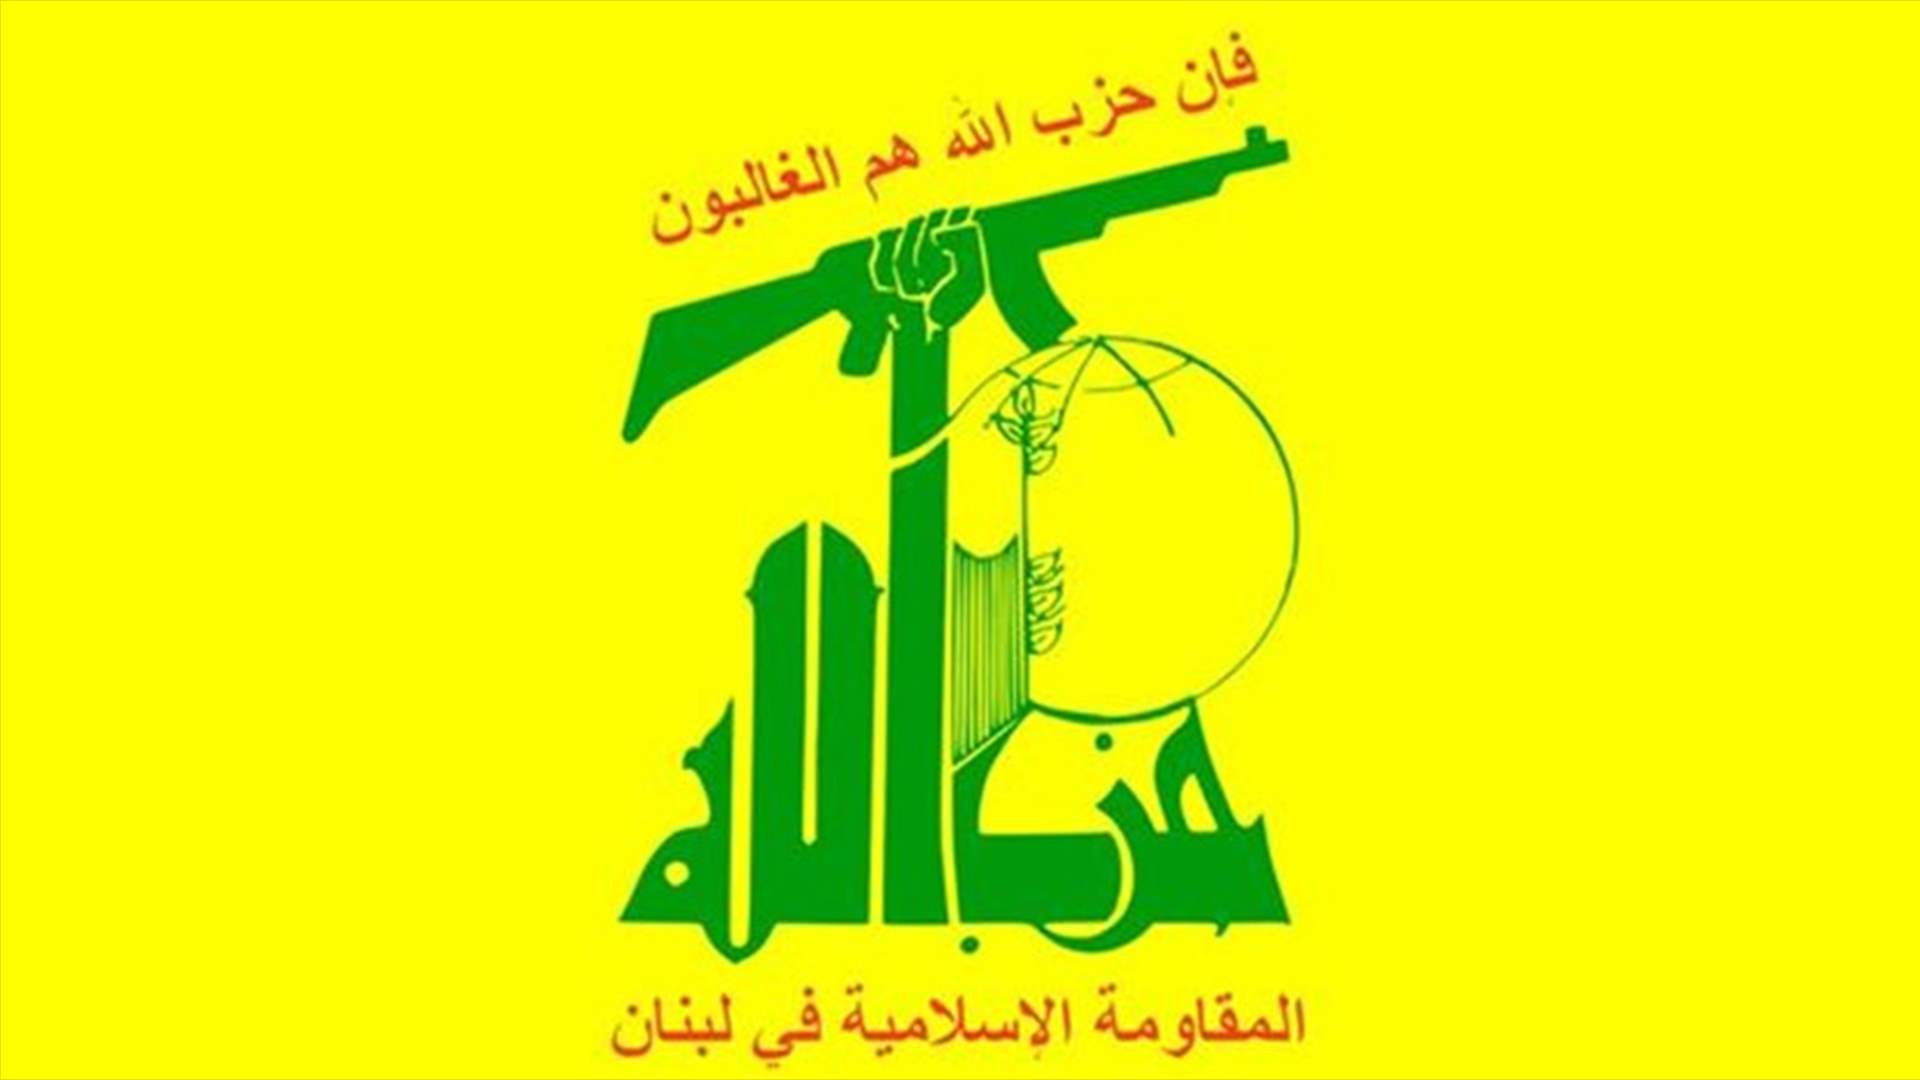 خشية من توحيد حزب الله للساحتين اللبنانية والفلسطينية   